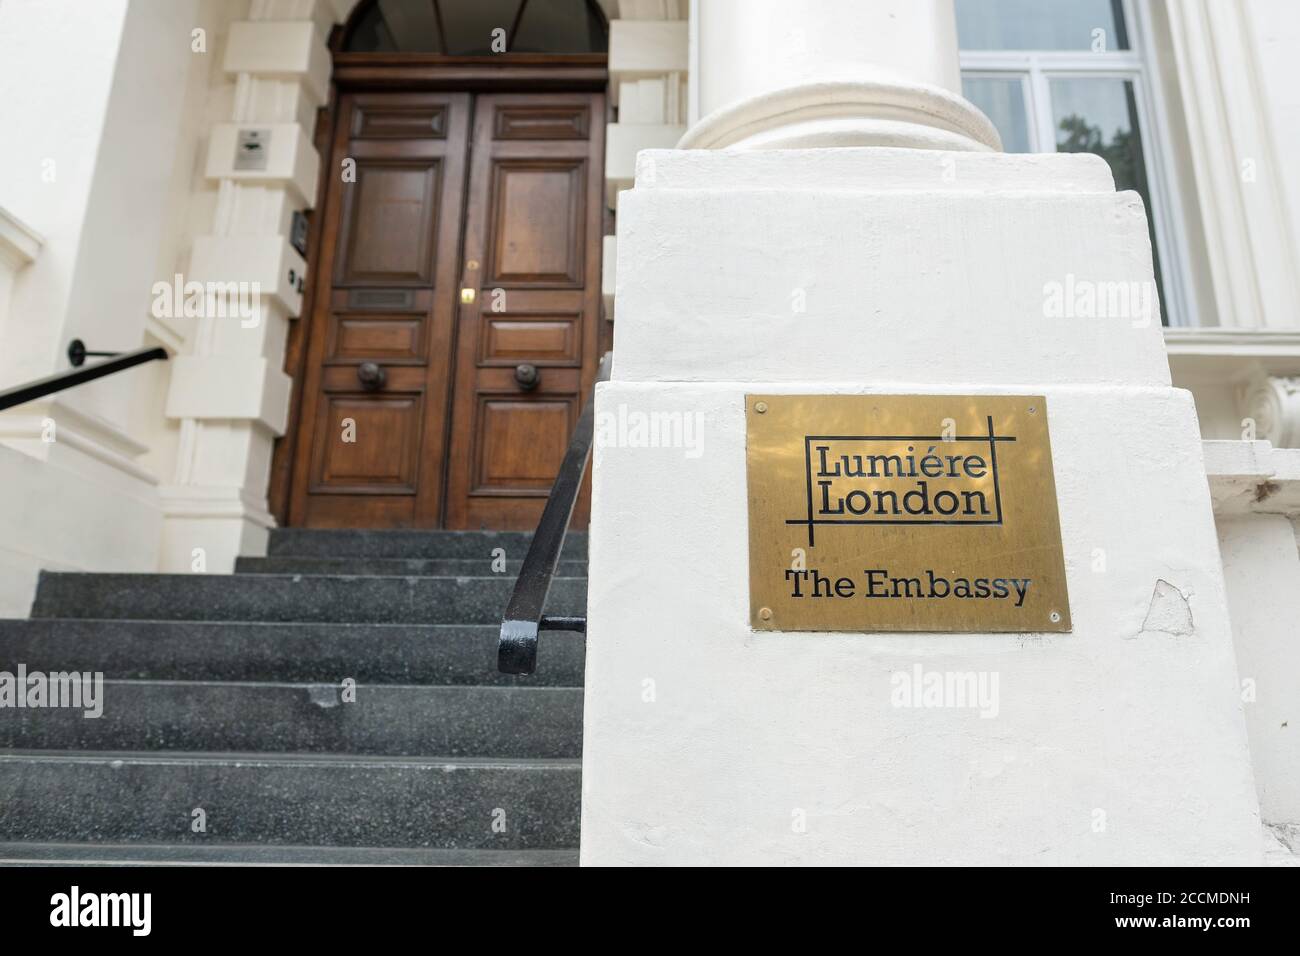 L'ambassade - Lumiere London, un lieu d'événements haut de gamme à Belgravia Banque D'Images